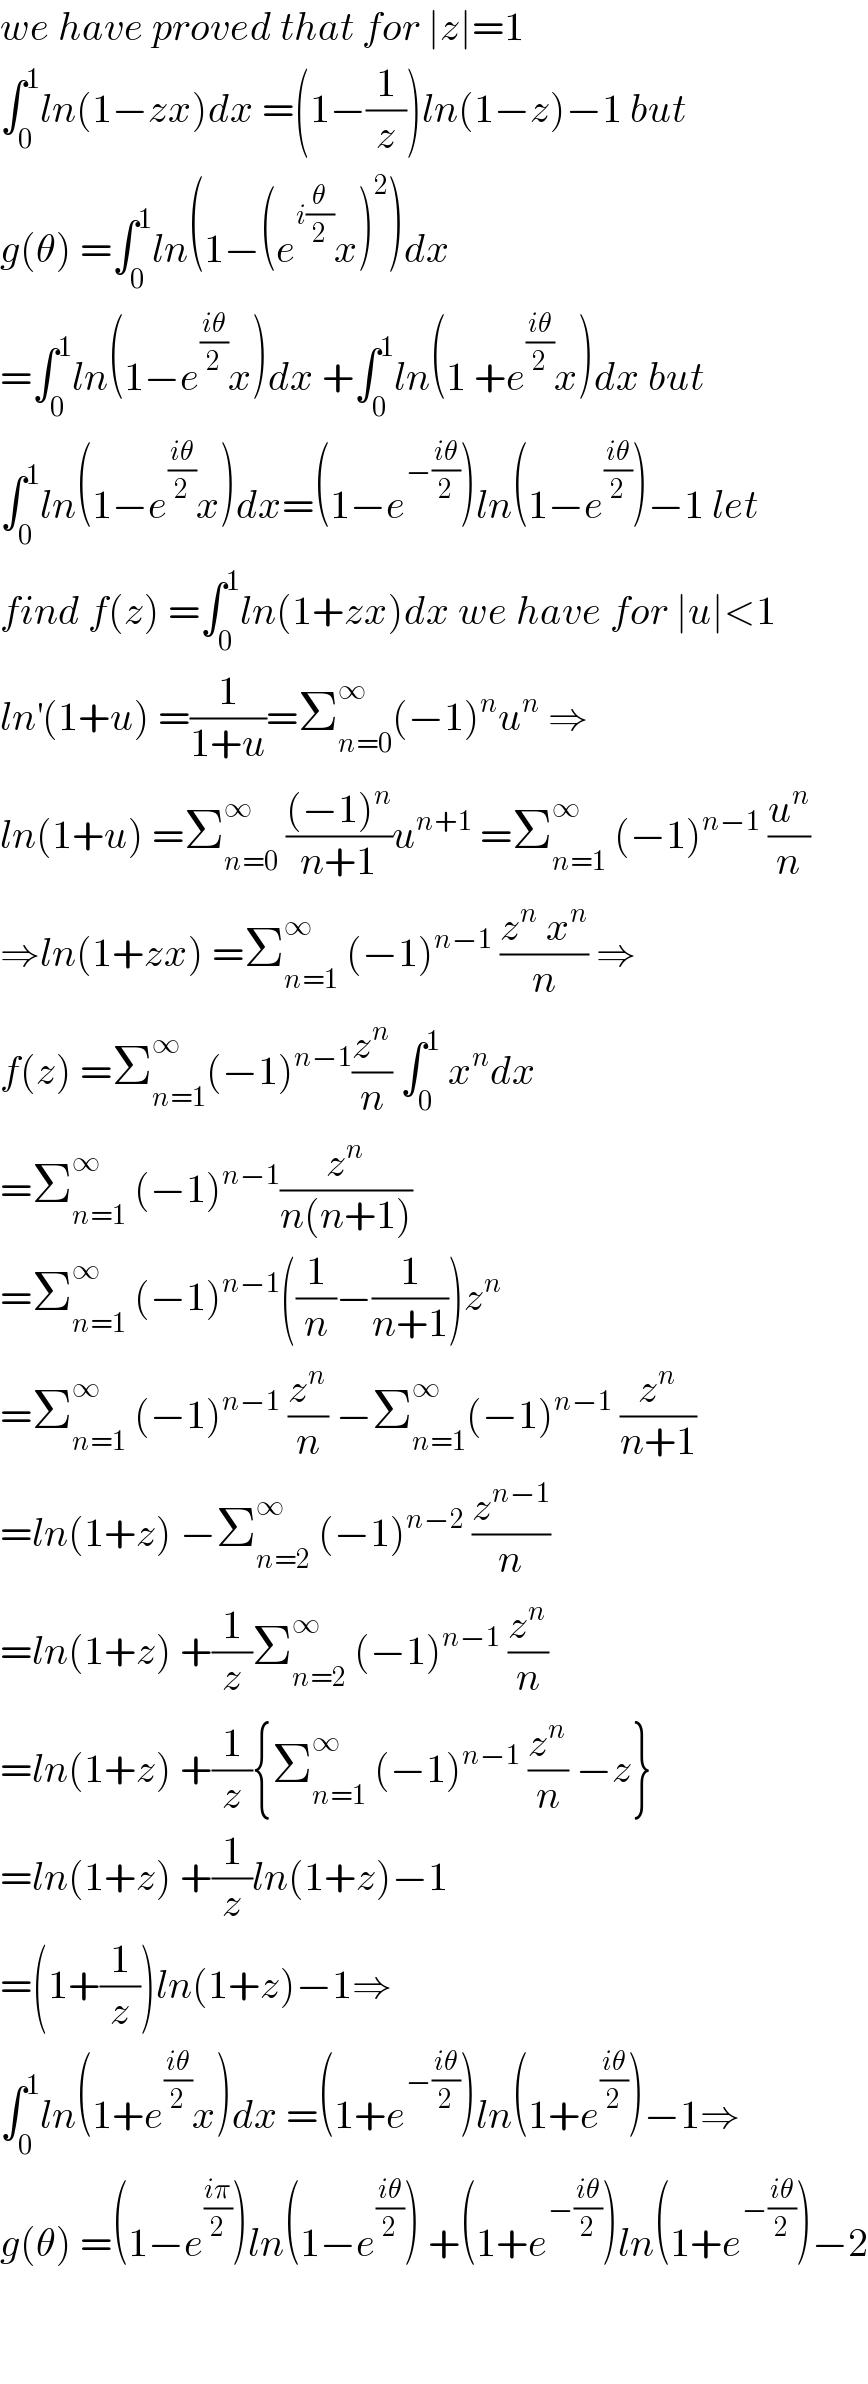 we have proved that for ∣z∣=1  ∫_0 ^1 ln(1−zx)dx =(1−(1/z))ln(1−z)−1 but  g(θ) =∫_0 ^1 ln(1−(e^(i(θ/2)) x)^2 )dx  =∫_0 ^1 ln(1−e^((iθ)/2) x)dx +∫_0 ^1 ln(1 +e^((iθ)/2) x)dx but  ∫_0 ^1 ln(1−e^((iθ)/2) x)dx=(1−e^(−((iθ)/2)) )ln(1−e^((iθ)/2) )−1 let  find f(z) =∫_0 ^1 ln(1+zx)dx we have for ∣u∣<1  ln^′ (1+u) =(1/(1+u))=Σ_(n=0) ^∞ (−1)^n u^n  ⇒  ln(1+u) =Σ_(n=0) ^∞  (((−1)^n )/(n+1))u^(n+1)  =Σ_(n=1) ^∞  (−1)^(n−1)  (u^n /n)  ⇒ln(1+zx) =Σ_(n=1) ^∞  (−1)^(n−1)  ((z^n  x^n )/n) ⇒  f(z) =Σ_(n=1) ^∞ (−1)^(n−1) (z^n /n) ∫_0 ^1  x^n dx  =Σ_(n=1) ^∞  (−1)^(n−1) (z^n /(n(n+1)))  =Σ_(n=1) ^∞  (−1)^(n−1) ((1/n)−(1/(n+1)))z^n   =Σ_(n=1) ^∞  (−1)^(n−1)  (z^n /n) −Σ_(n=1) ^∞ (−1)^(n−1)  (z^n /(n+1))  =ln(1+z) −Σ_(n=2) ^∞  (−1)^(n−2)  (z^(n−1) /n)  =ln(1+z) +(1/z)Σ_(n=2) ^∞  (−1)^(n−1)  (z^n /n)  =ln(1+z) +(1/z){Σ_(n=1) ^∞  (−1)^(n−1)  (z^n /n) −z}  =ln(1+z) +(1/z)ln(1+z)−1  =(1+(1/z))ln(1+z)−1⇒  ∫_0 ^1 ln(1+e^((iθ)/2) x)dx =(1+e^(−((iθ)/2)) )ln(1+e^((iθ)/2) )−1⇒  g(θ) =(1−e^((iπ)/2) )ln(1−e^((iθ)/2) ) +(1+e^(−((iθ)/2)) )ln(1+e^(−((iθ)/2)) )−2      